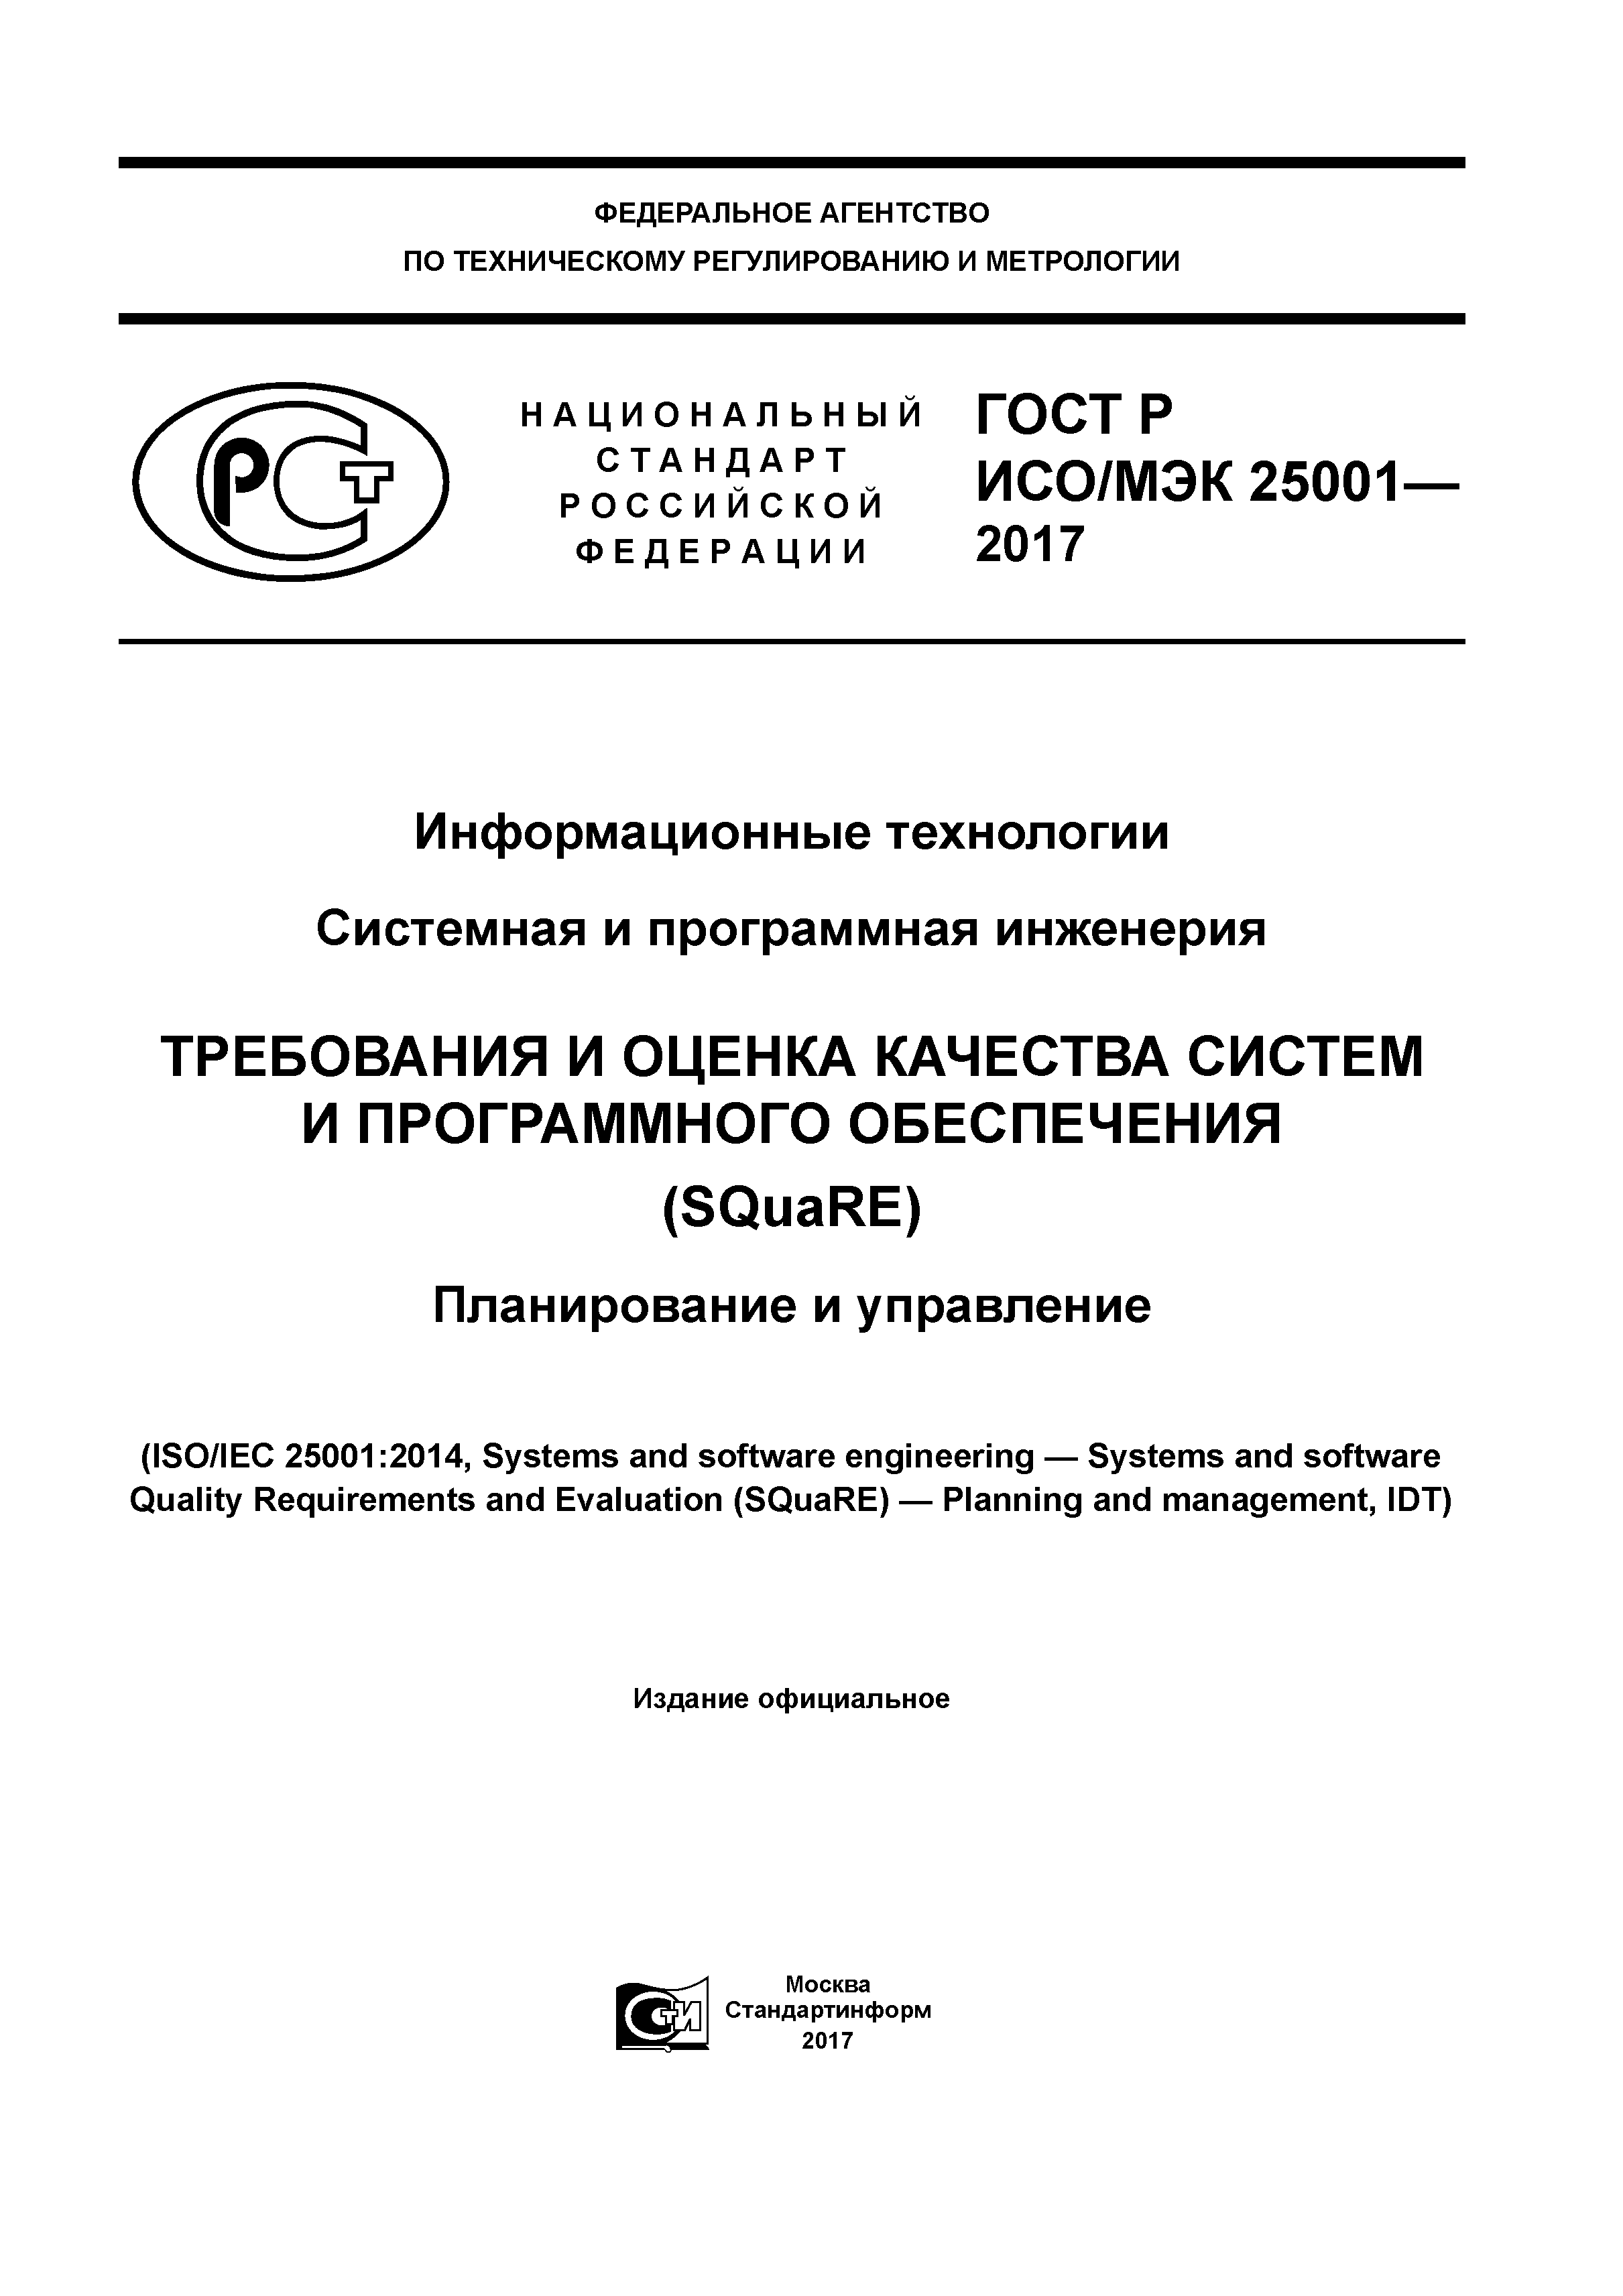 ГОСТ Р ИСО/МЭК 25001-2017